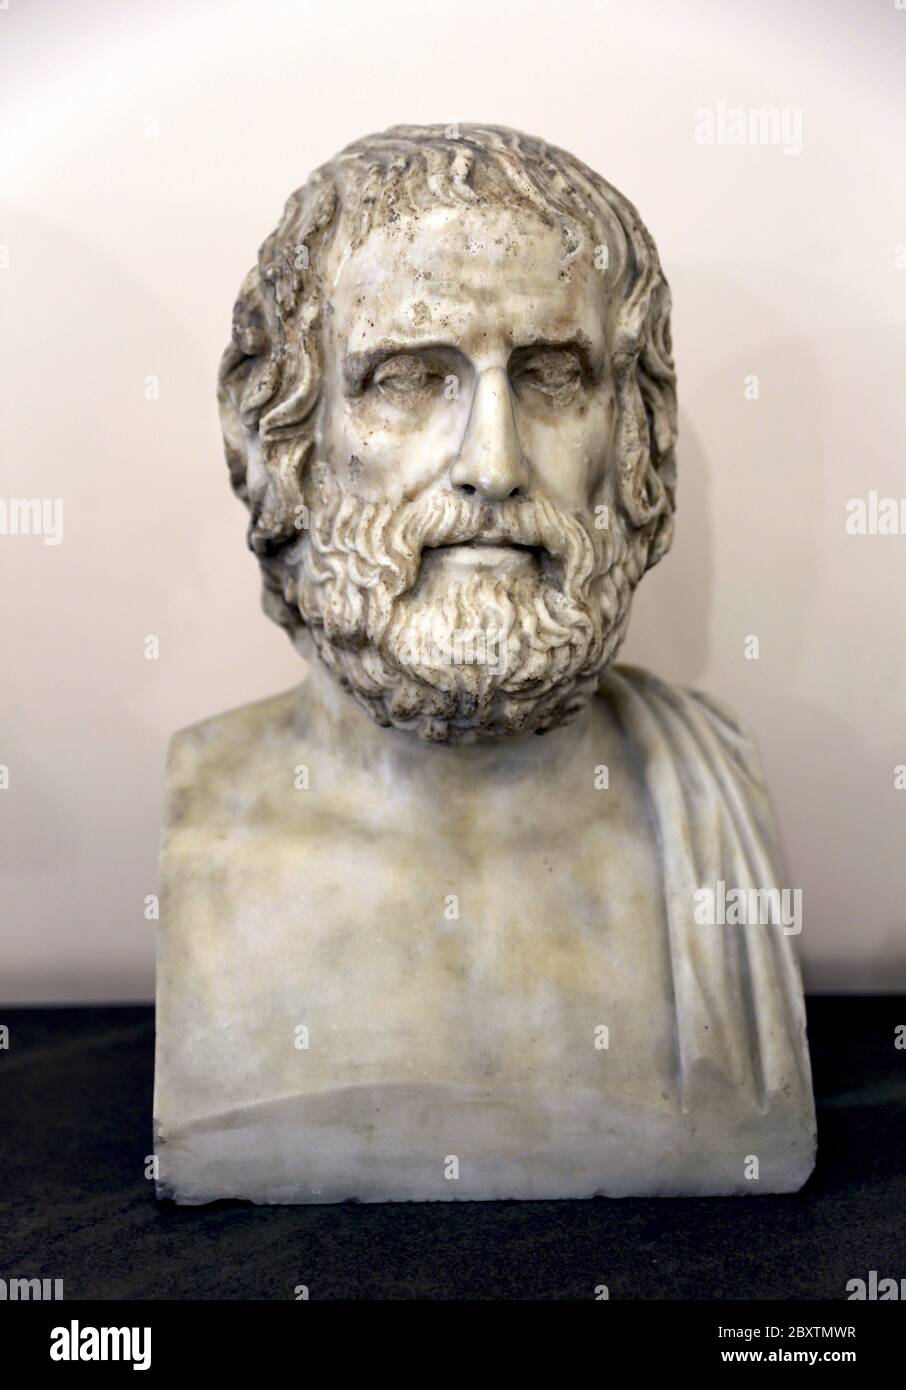 Il tragico poeta Euripide (c.. 484 - 406 A.C.). Busto romano, 1 ° o 2 ° secolo d.C. Copia di un originale greco. Museo Archeologico di Napoli. Italia. Foto Stock